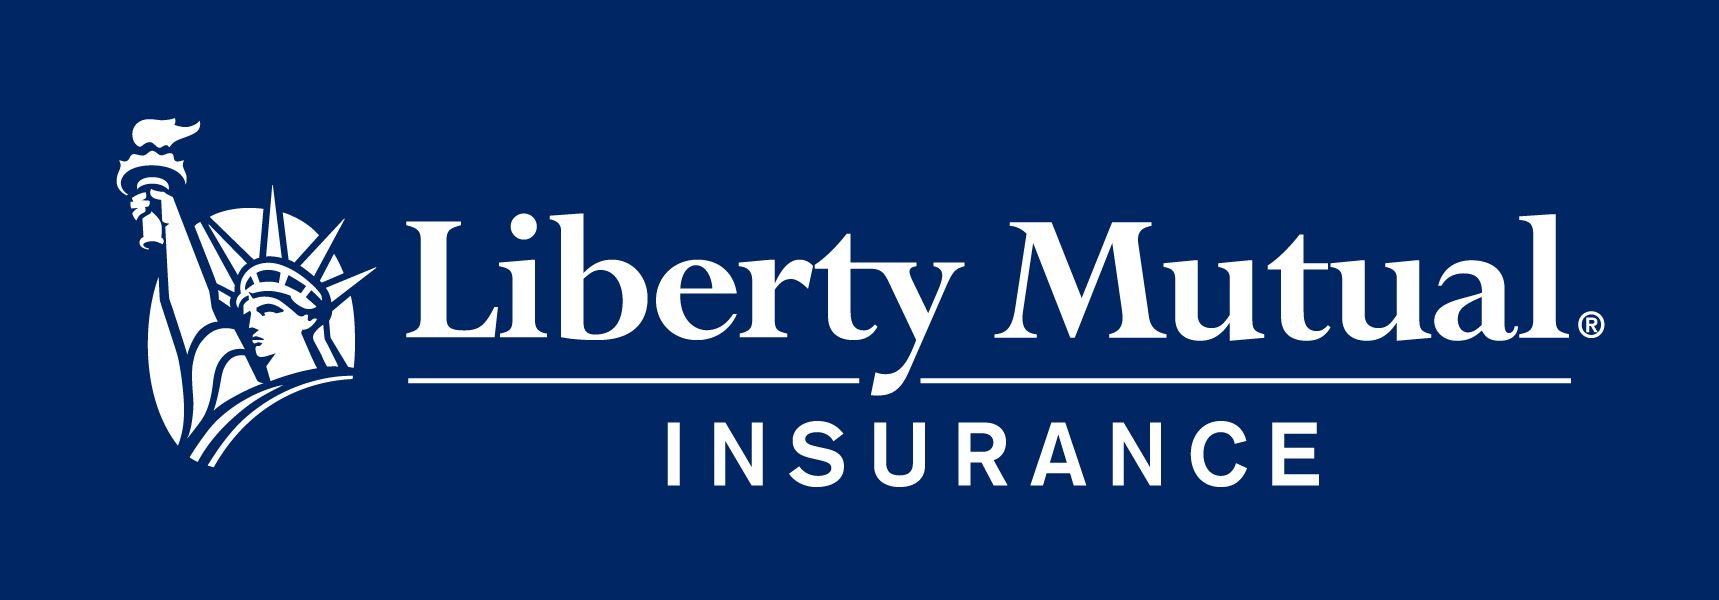 Liberty Mutual Logo Vector at Collection of Liberty